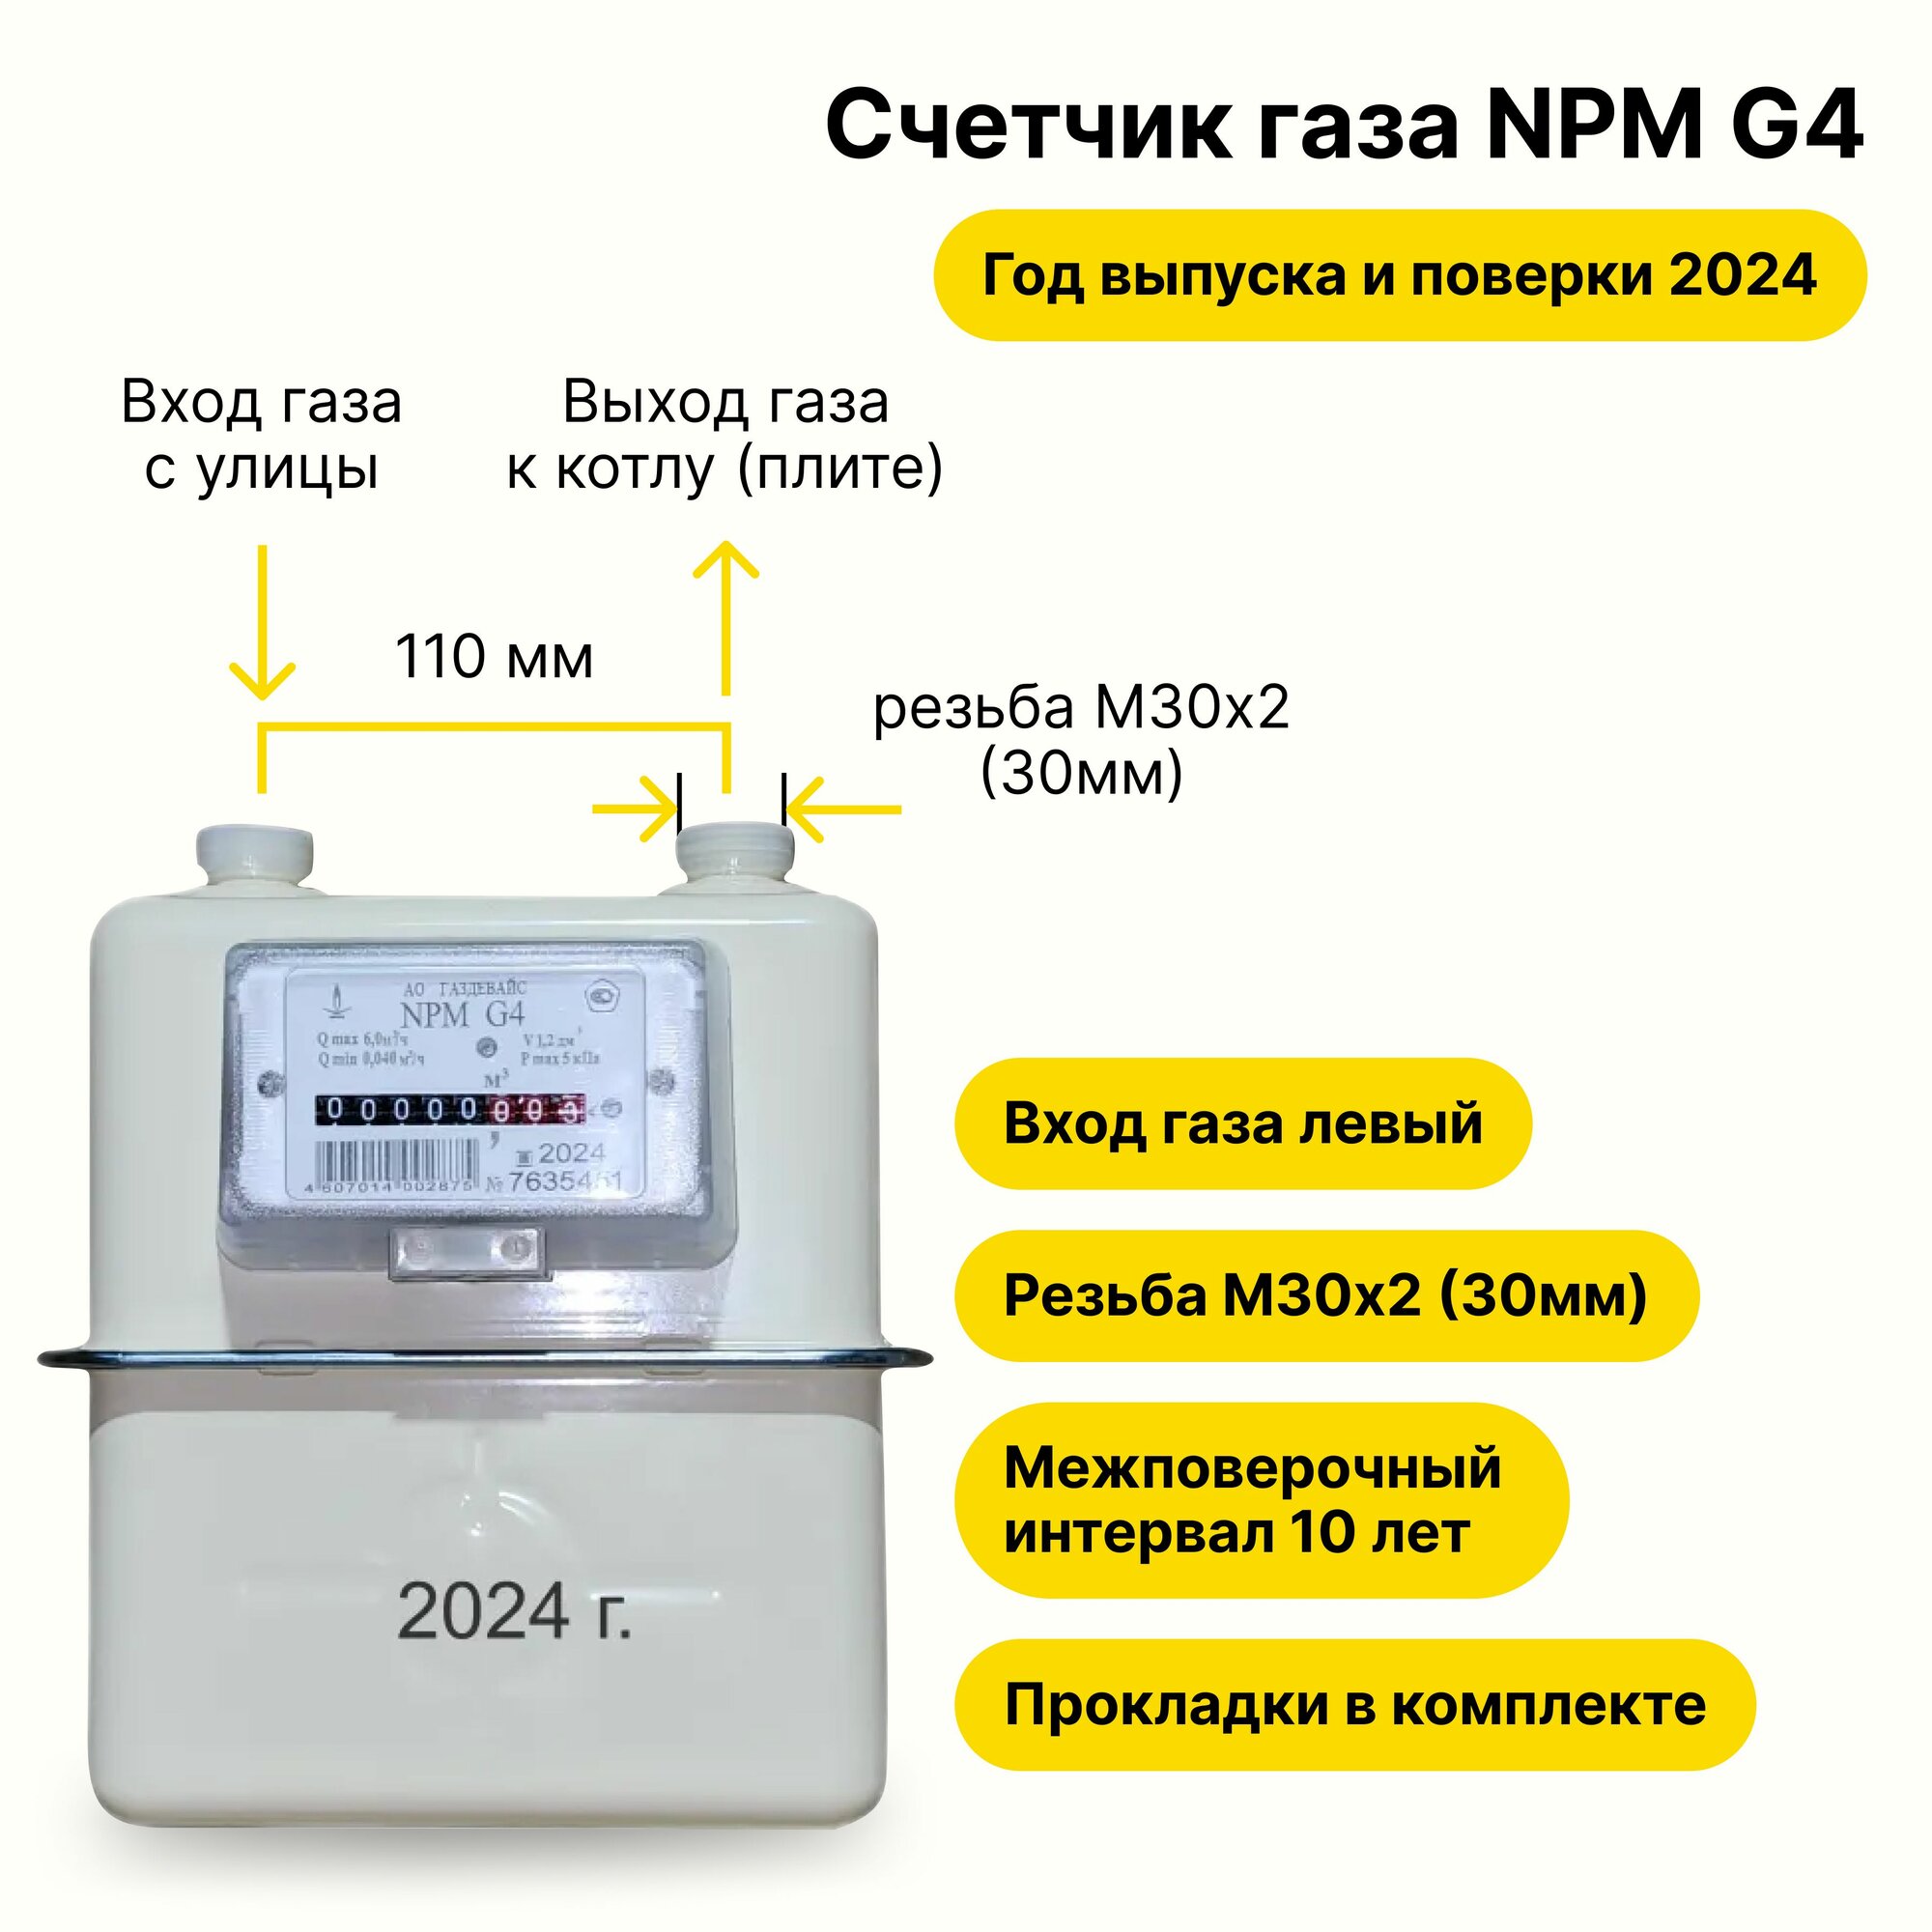 NPM-G4 (вход газа левый -->, резьба М30х2 , как СГК-G4 г. Владимир, прокладки В комплекте) 2024 года выпуска и выпуска